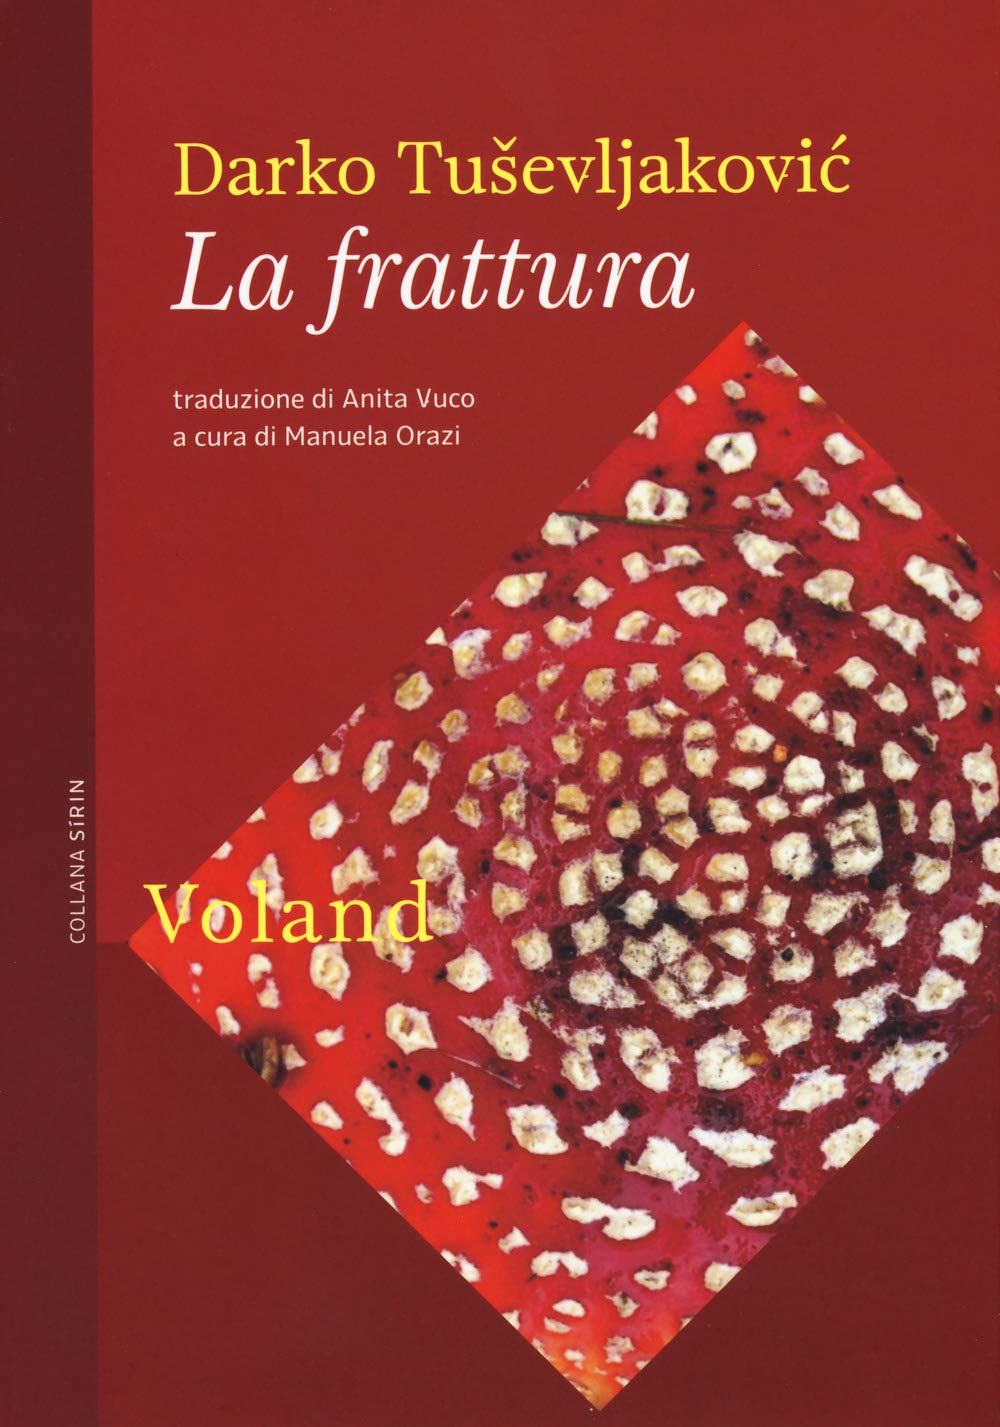 La frattura - Darko Tuševljaković - Libri Dicembre 2019